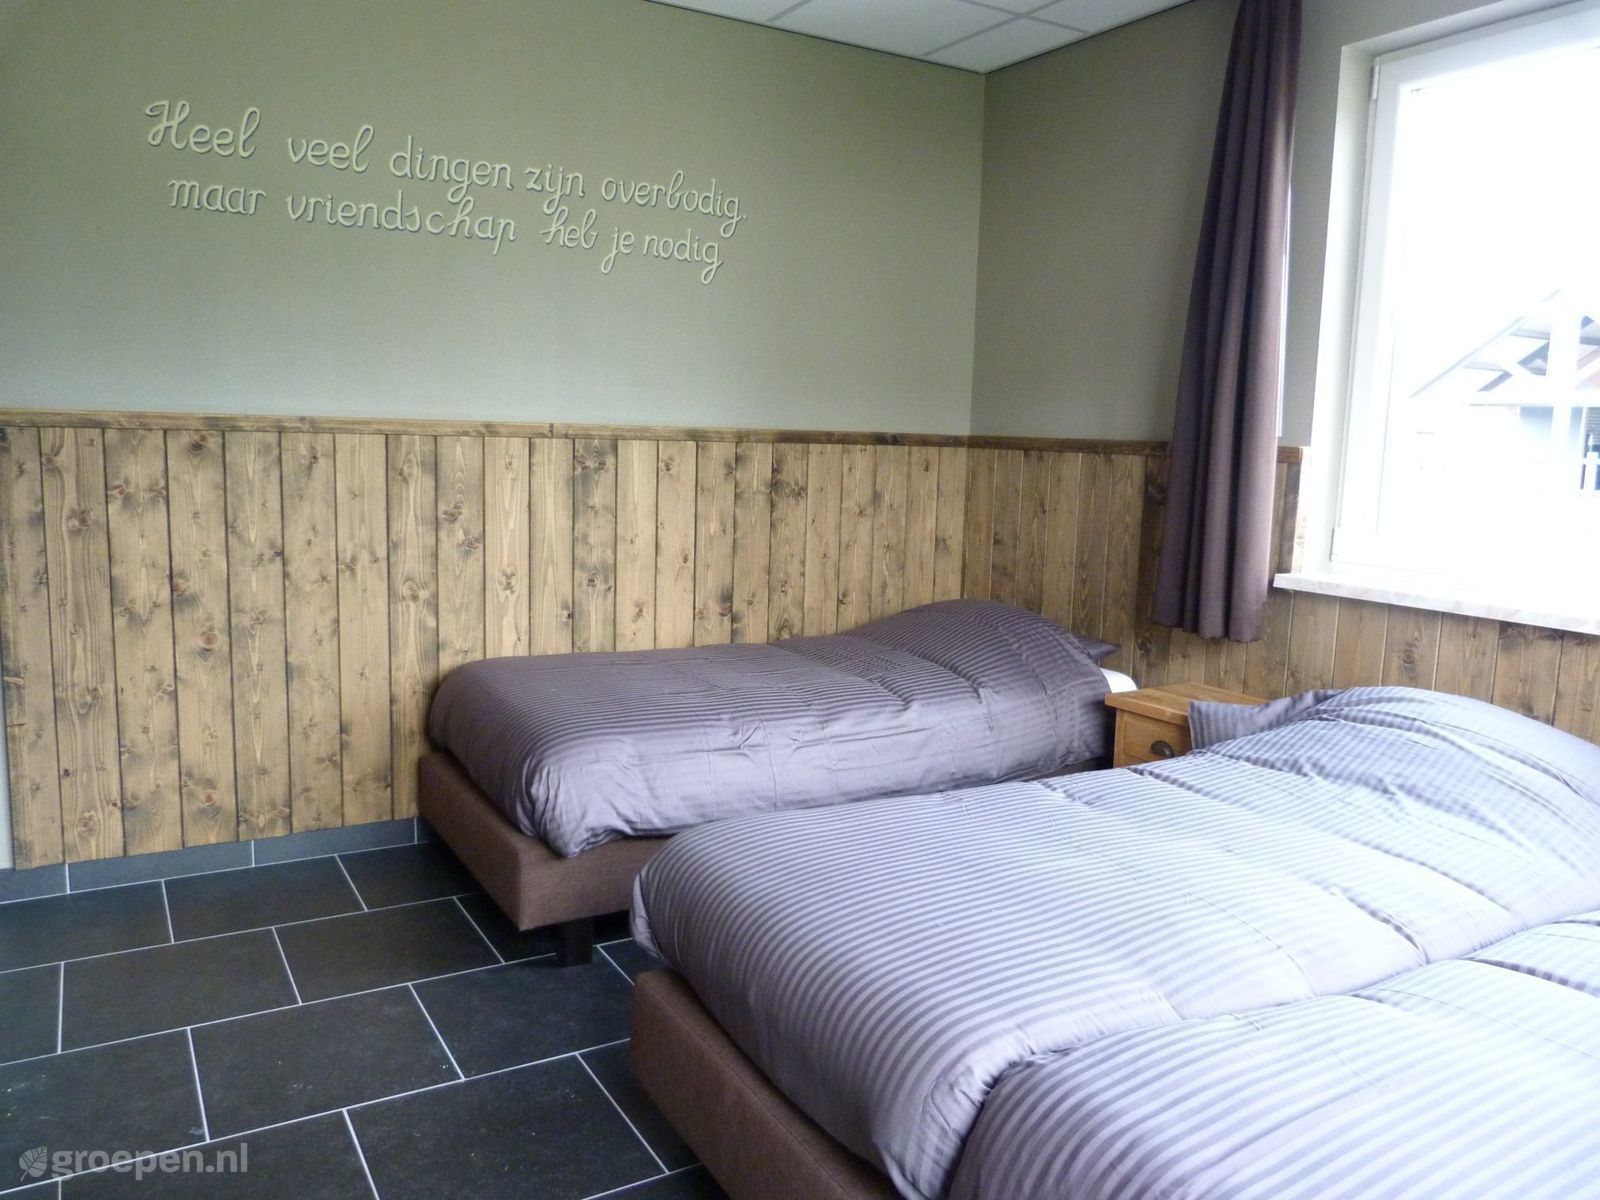 Group accommodation Liessel